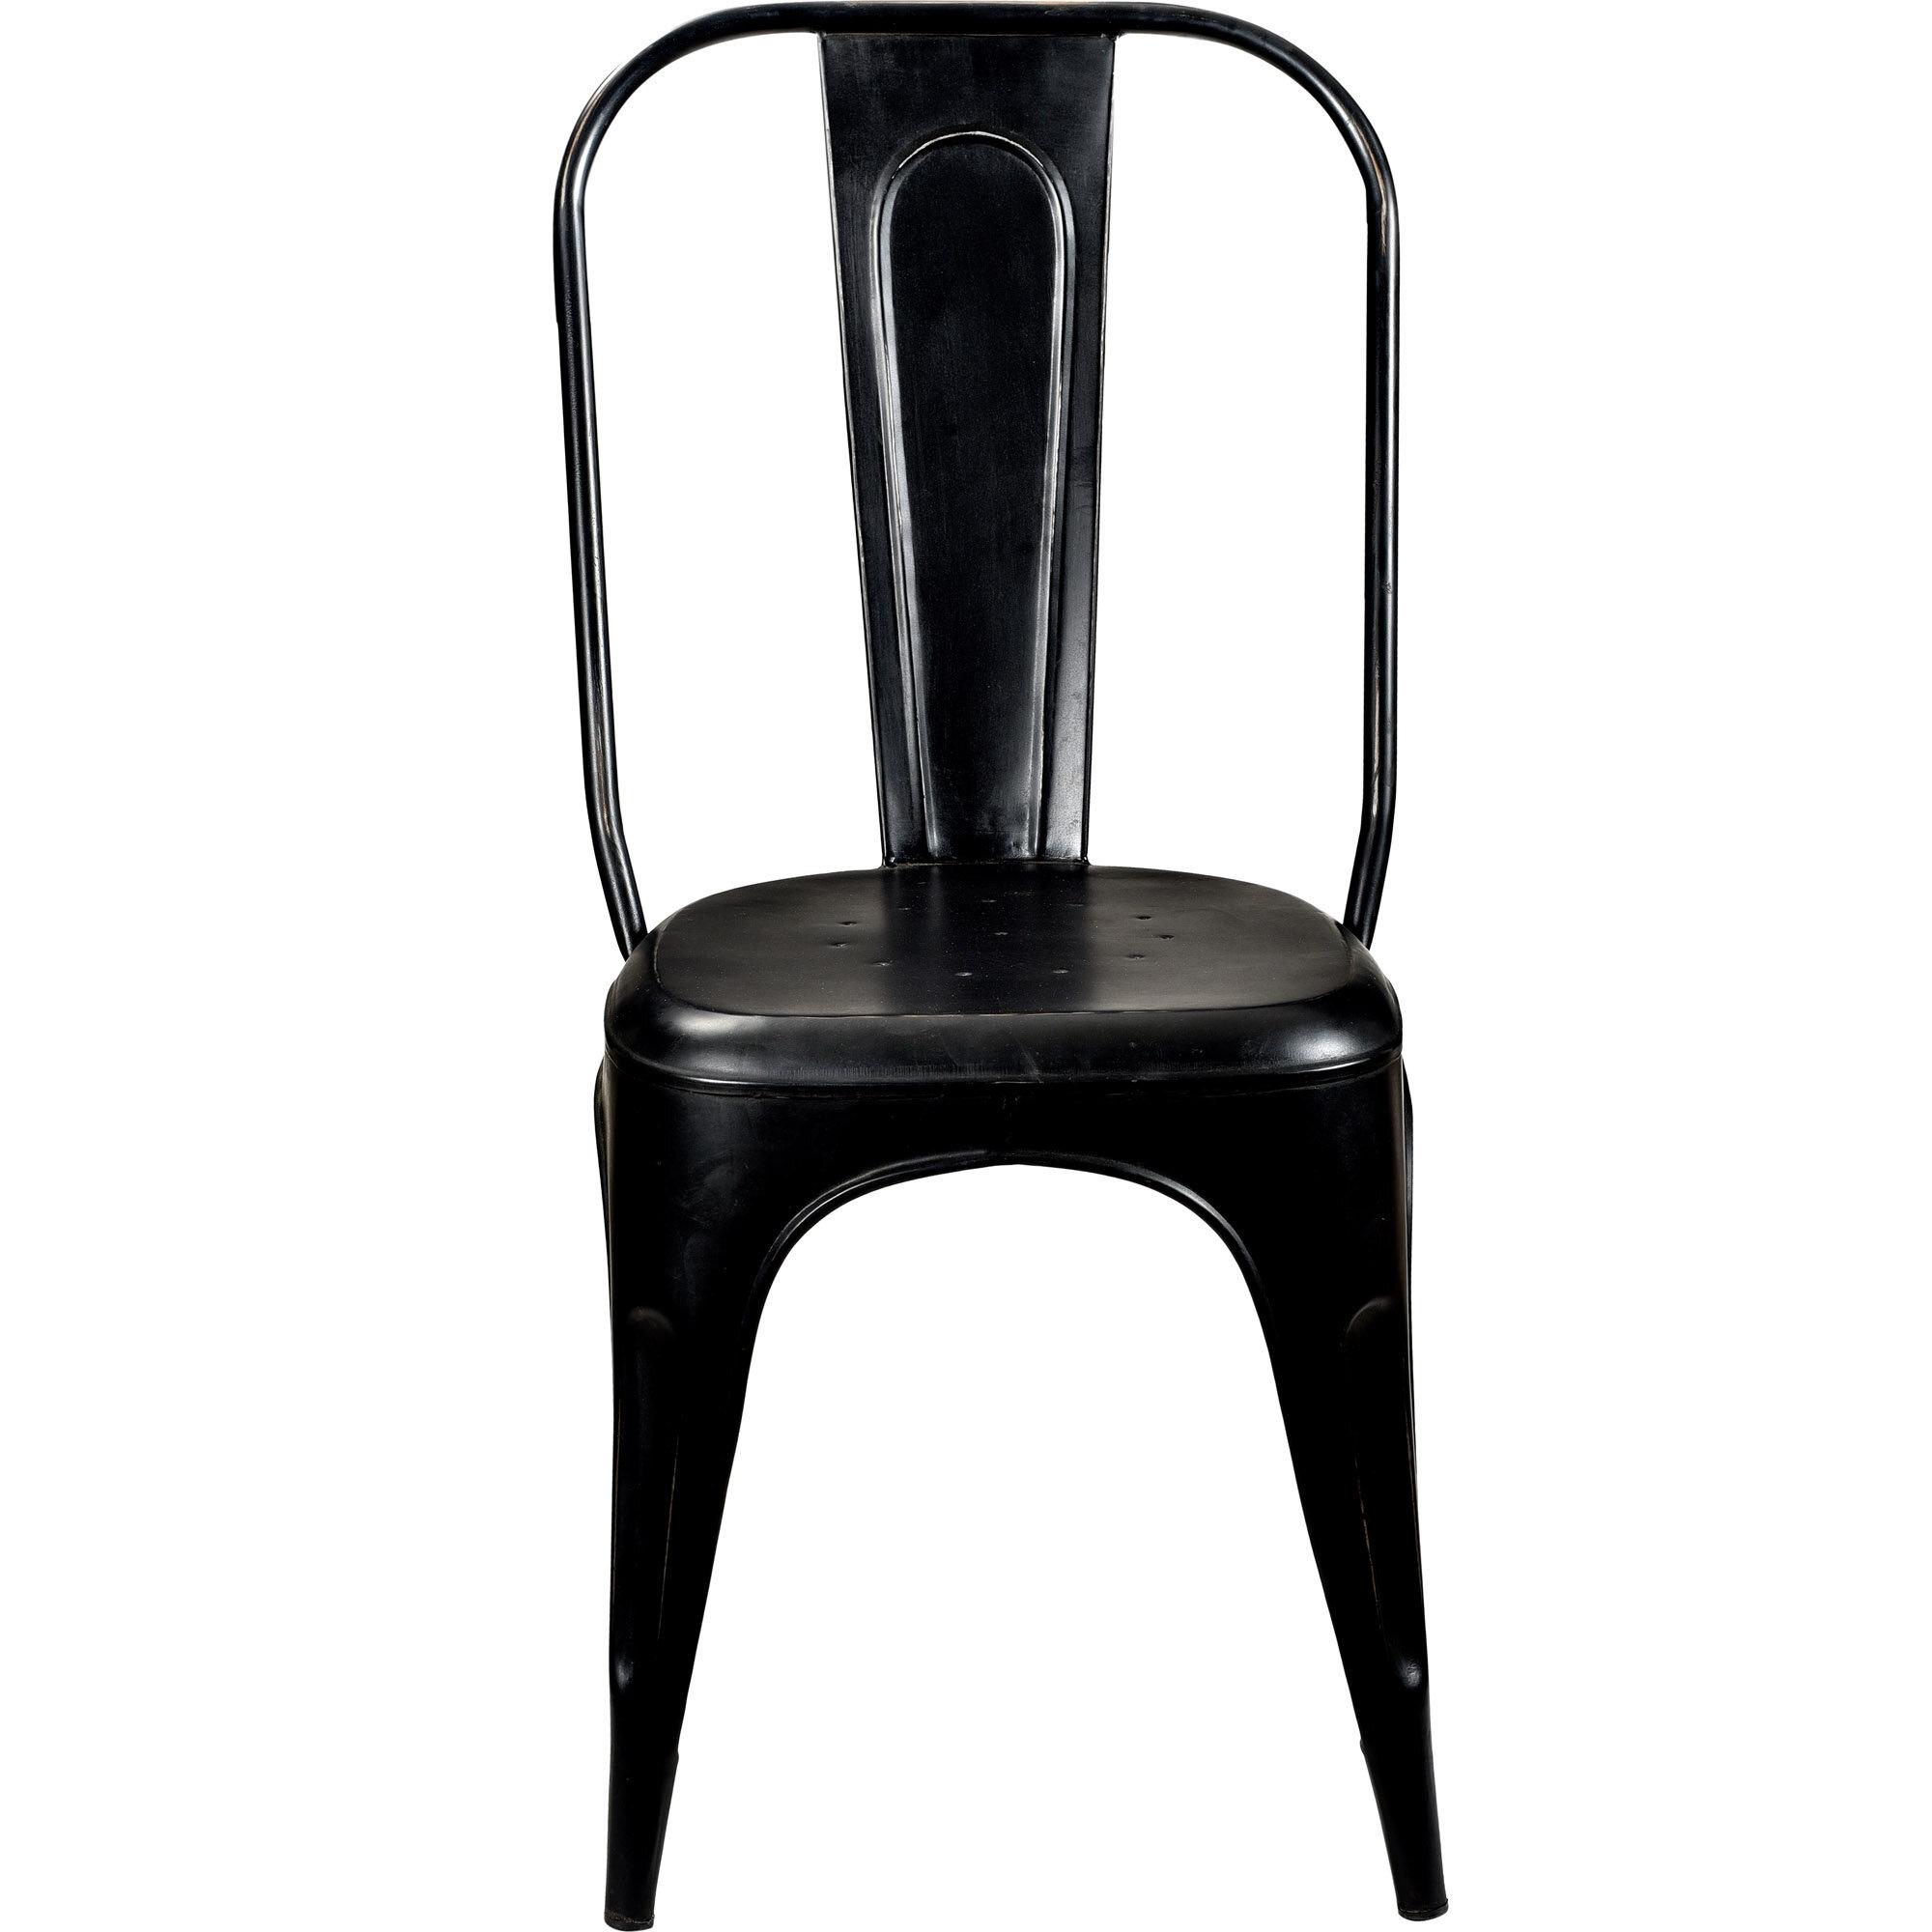  LIVING stol med høj ryg - antiksort fra Trademark Living i Jern (Varenr: M010029)